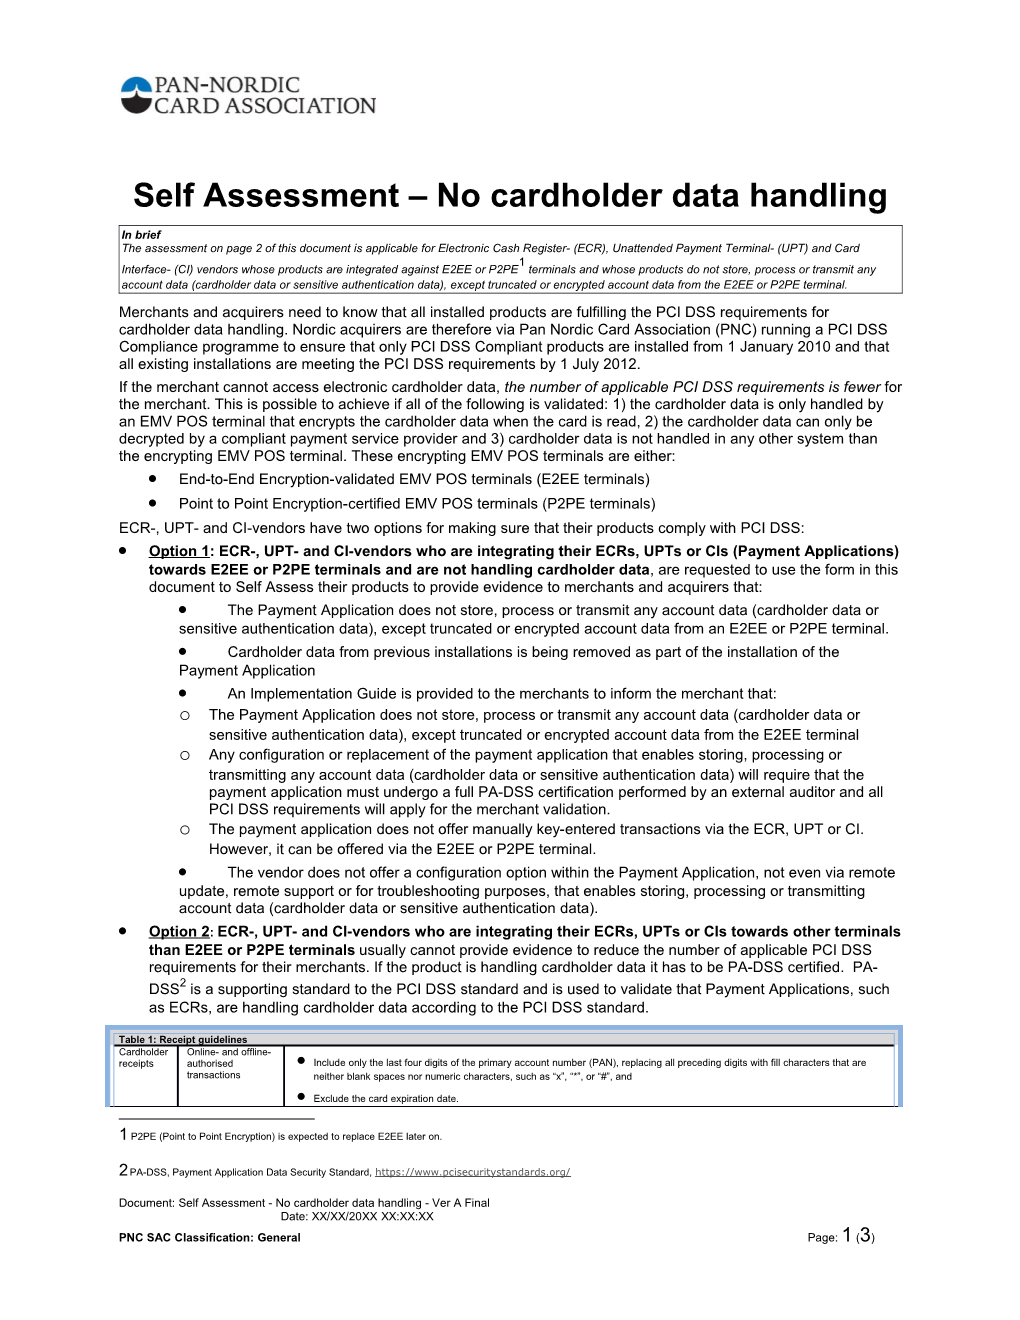 Self Assessment No Cardholder Data Handling